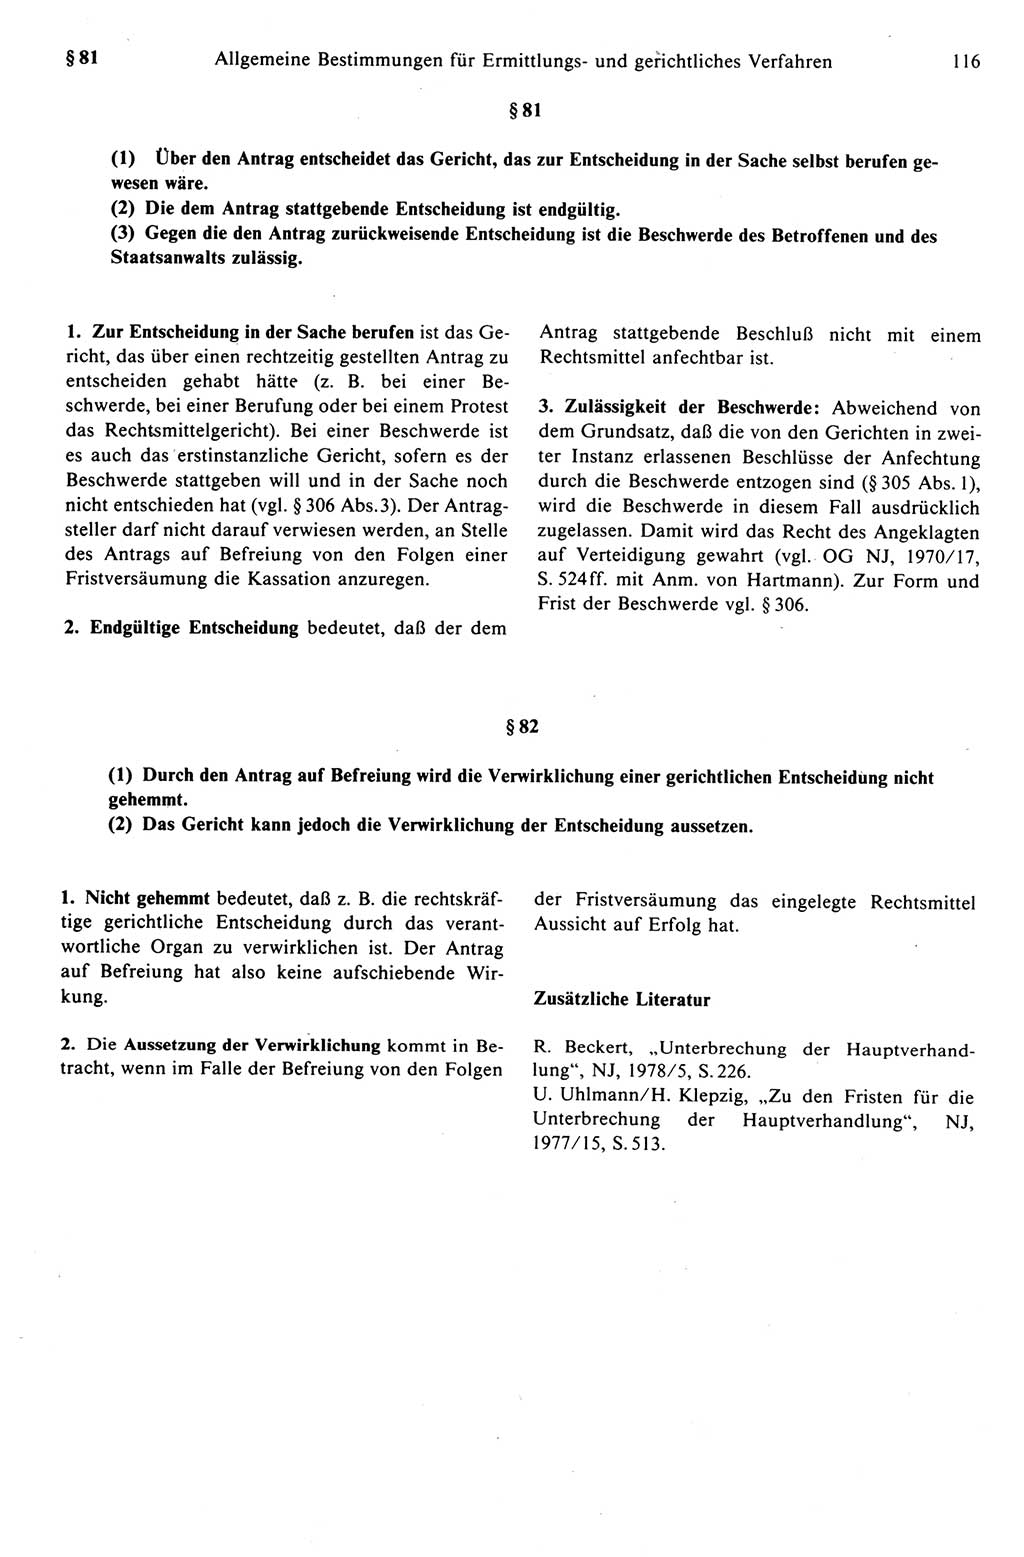 Strafprozeßrecht der DDR (Deutsche Demokratische Republik), Kommentar zur Strafprozeßordnung (StPO) 1989, Seite 116 (Strafprozeßr. DDR Komm. StPO 1989, S. 116)